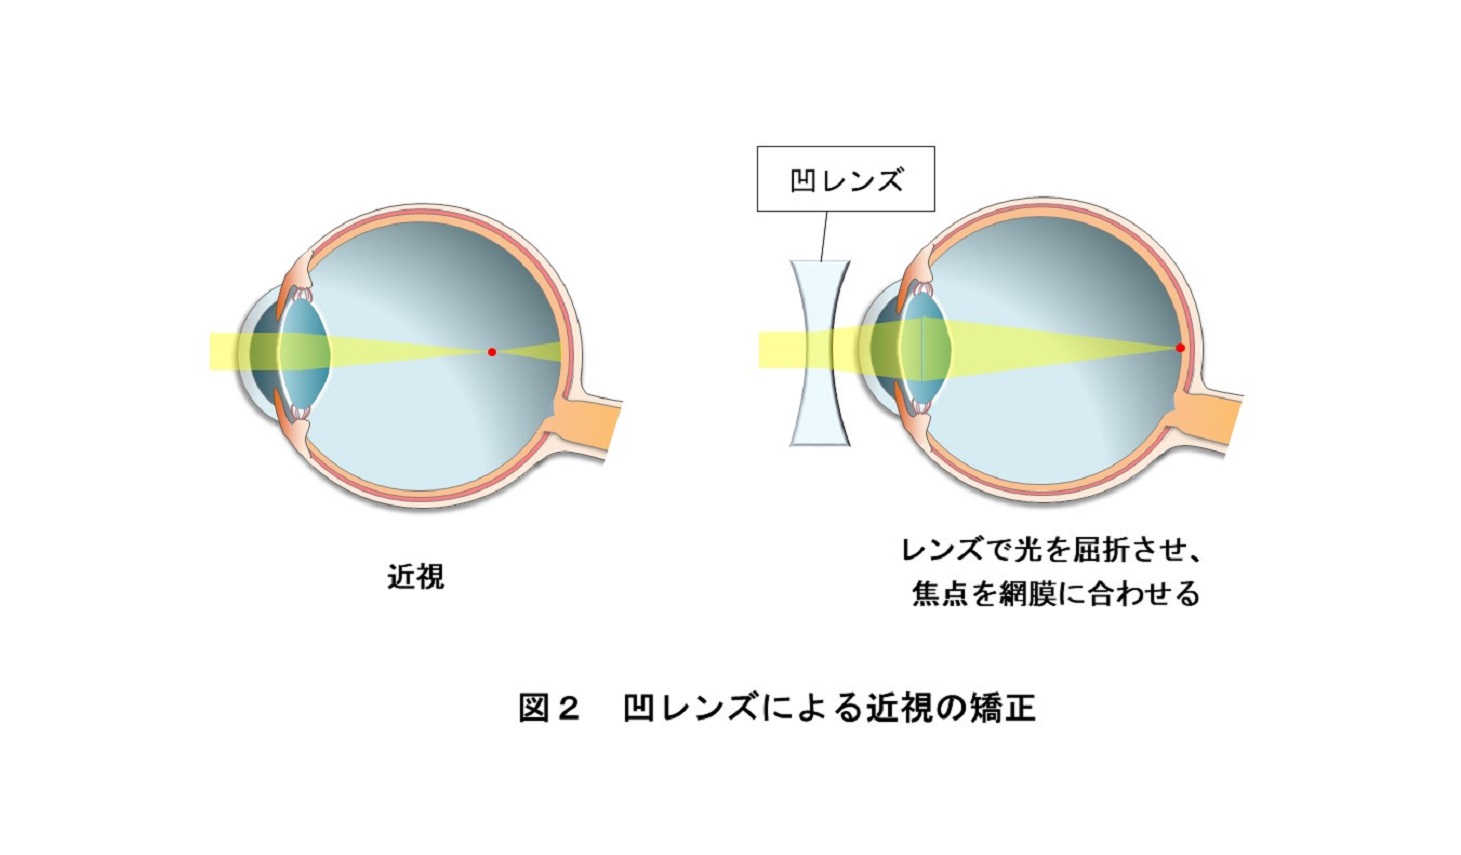 凹レンズによる近視の矯正